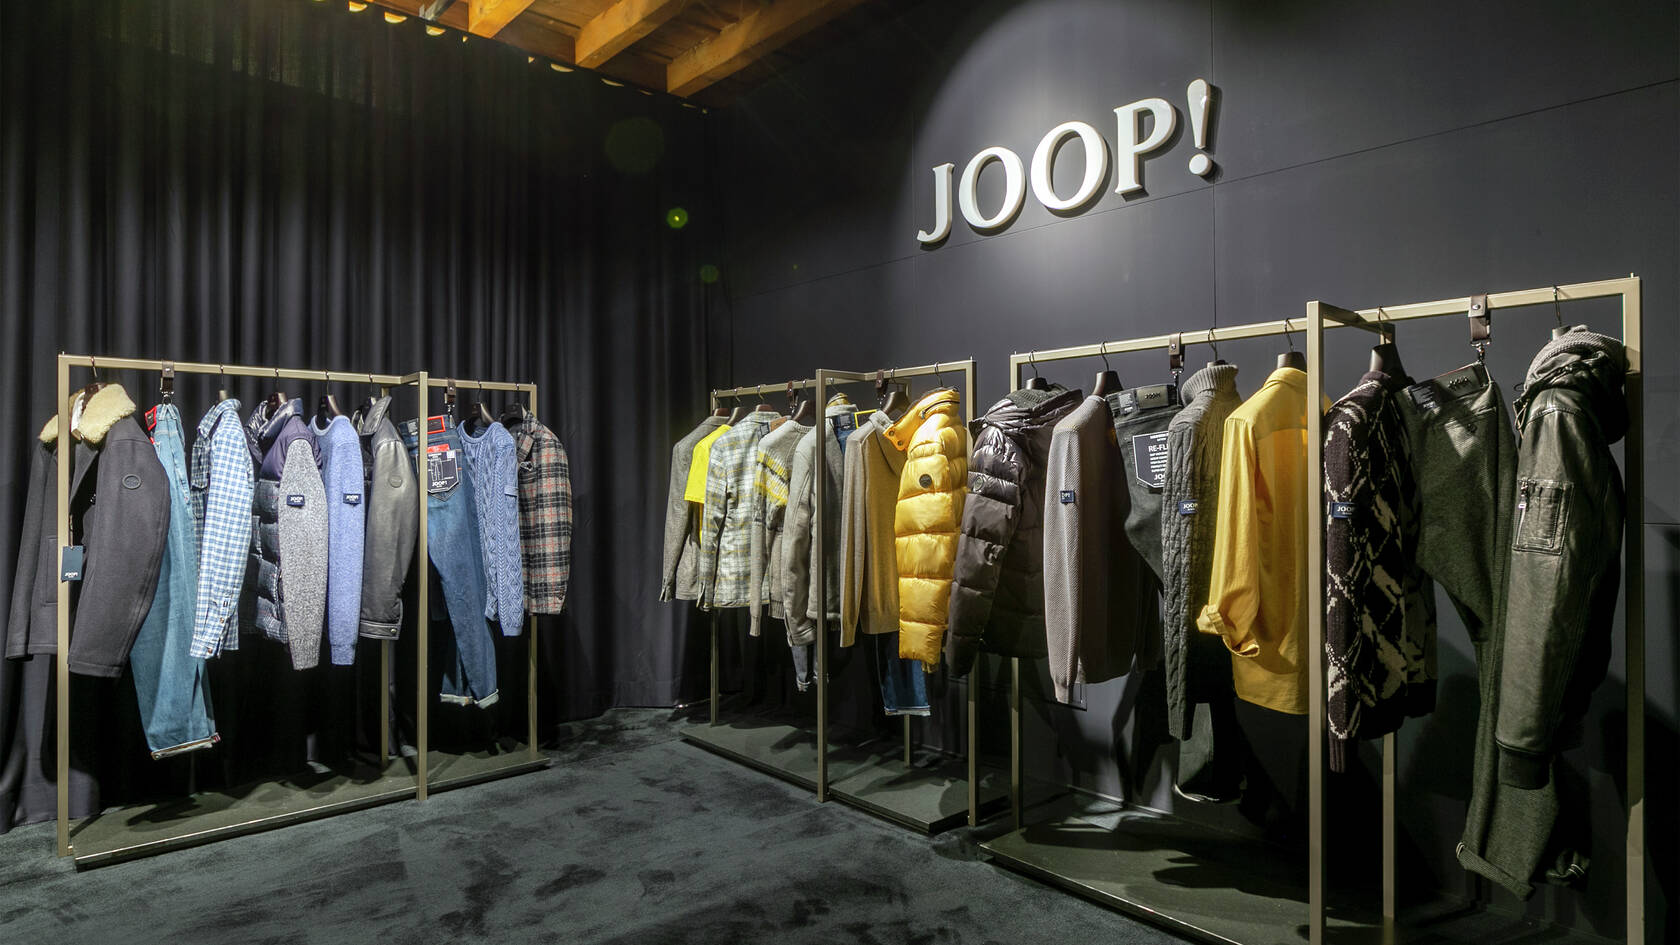 JOOP! clothing store